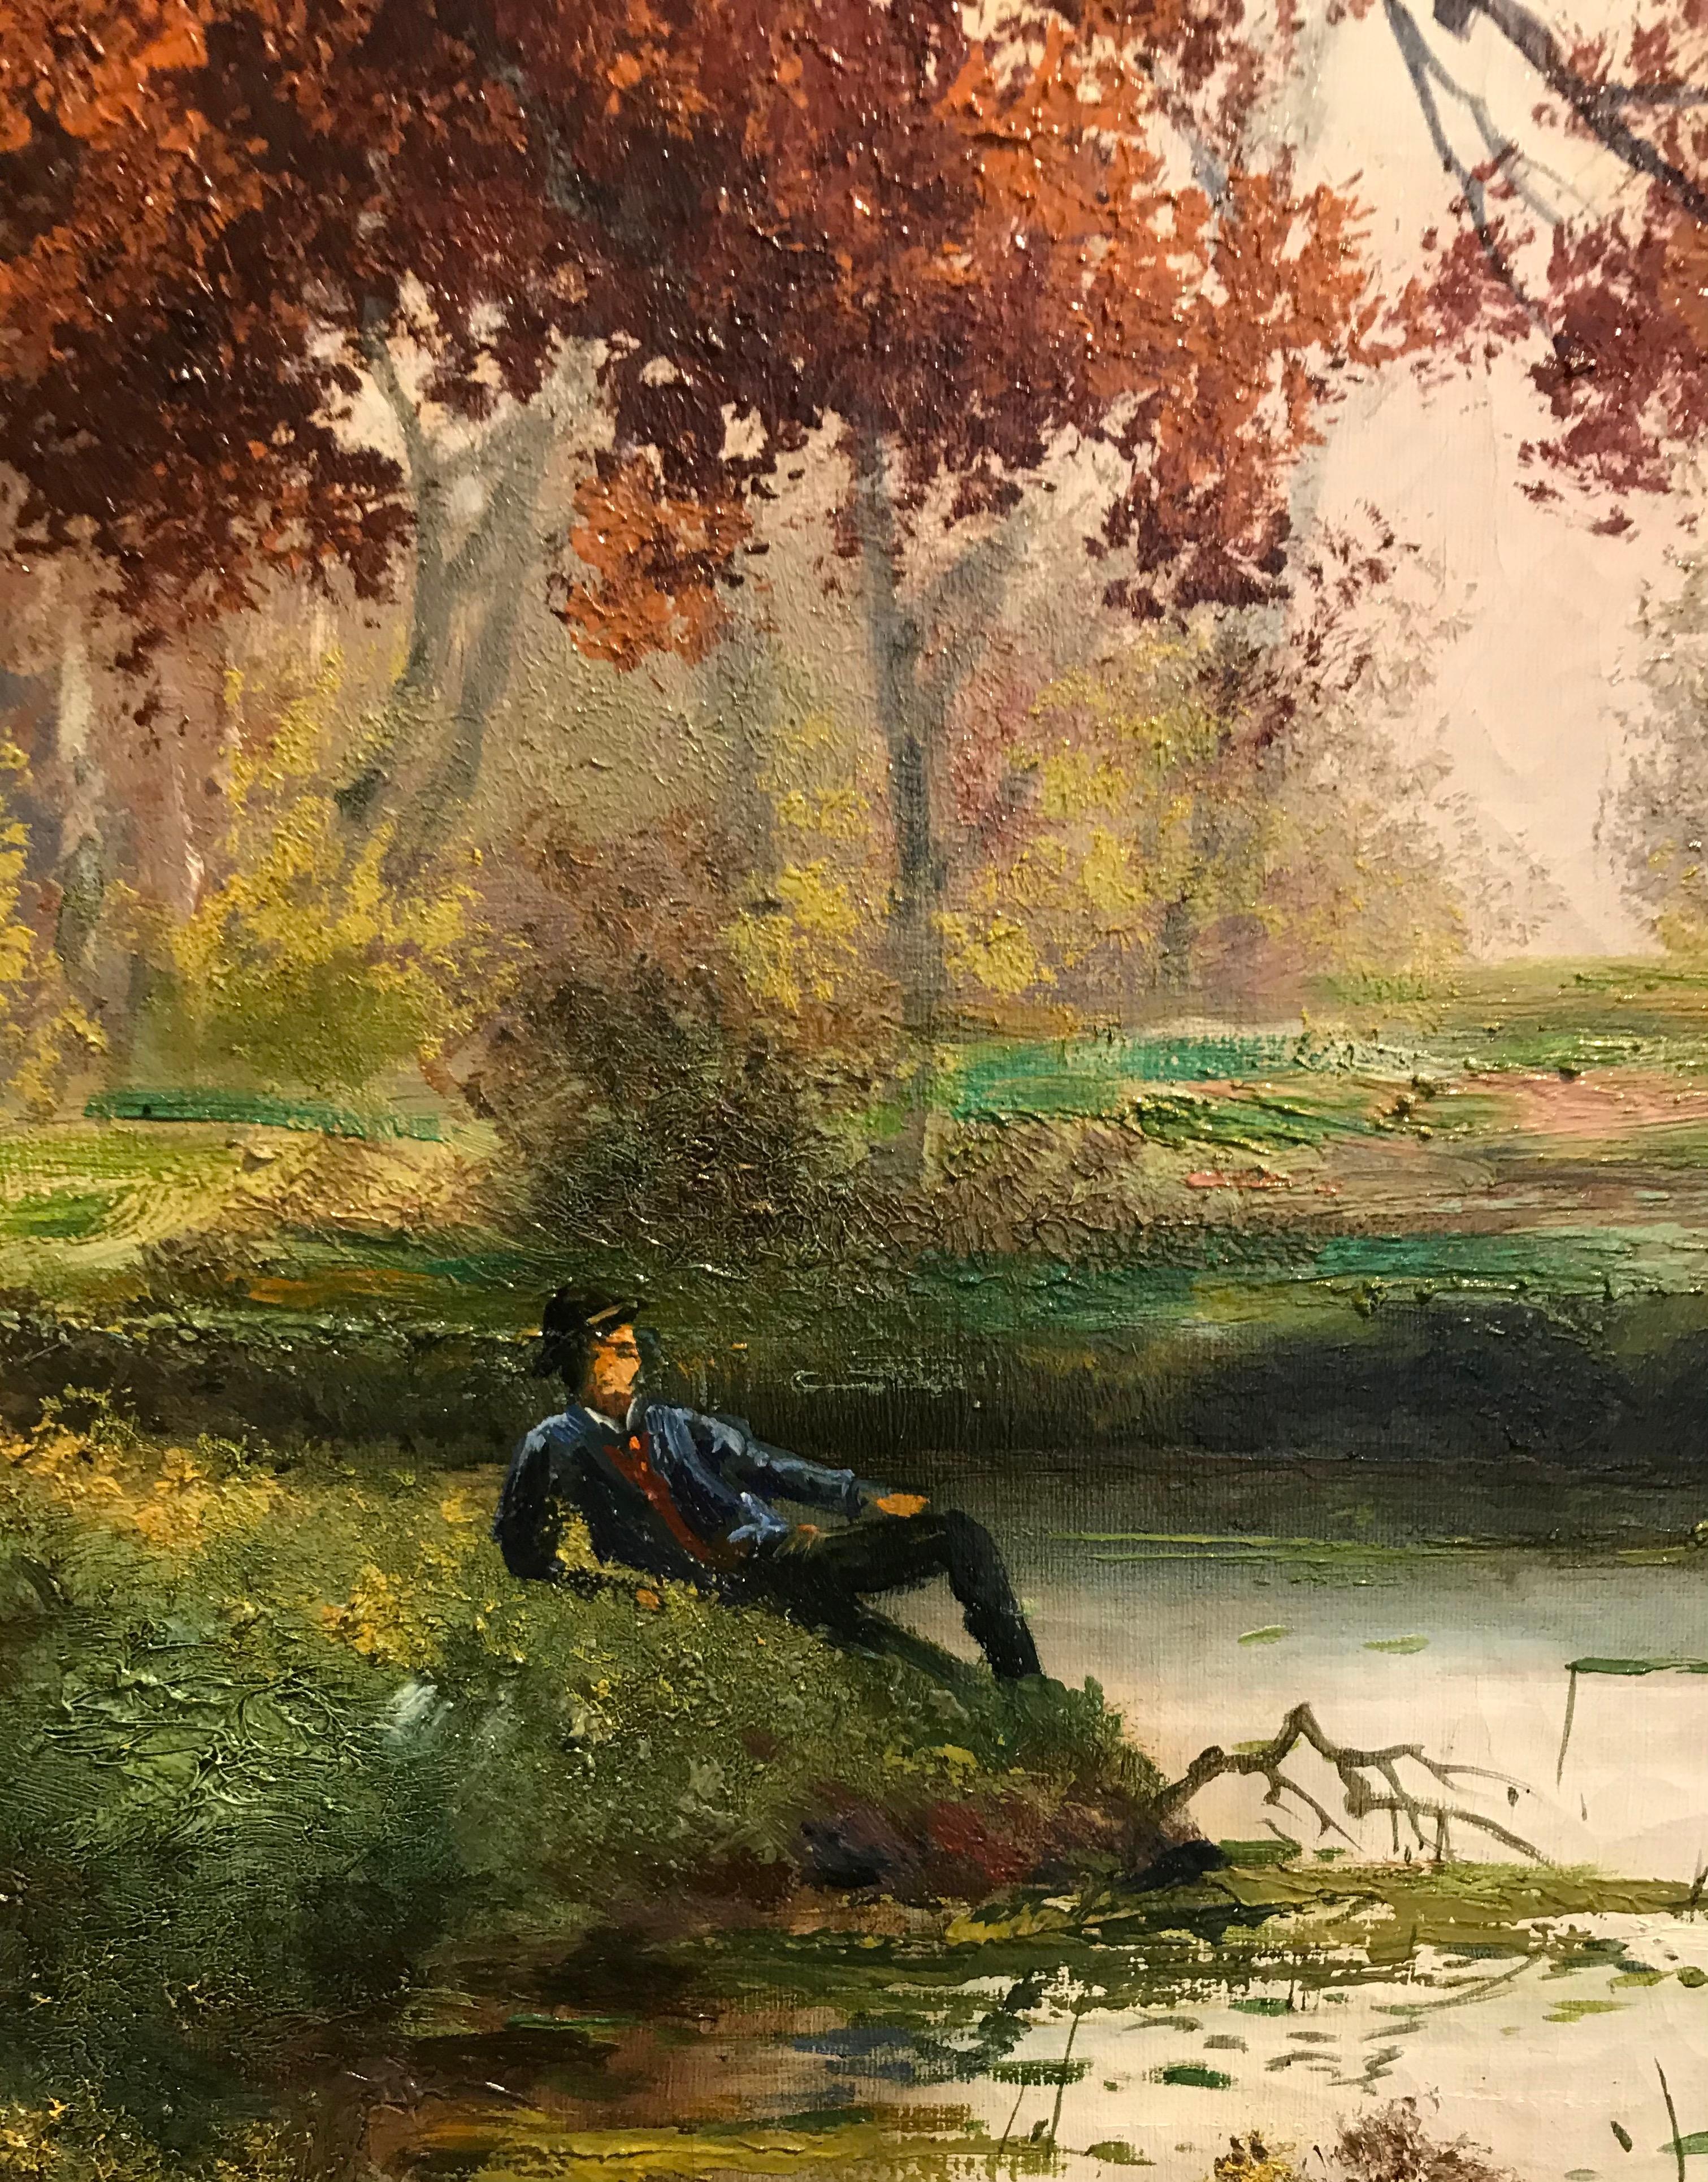 Repos dans le parc au bord de l'étang - Rest in the park by the pond - Pointillist Painting by Alois Arnegger